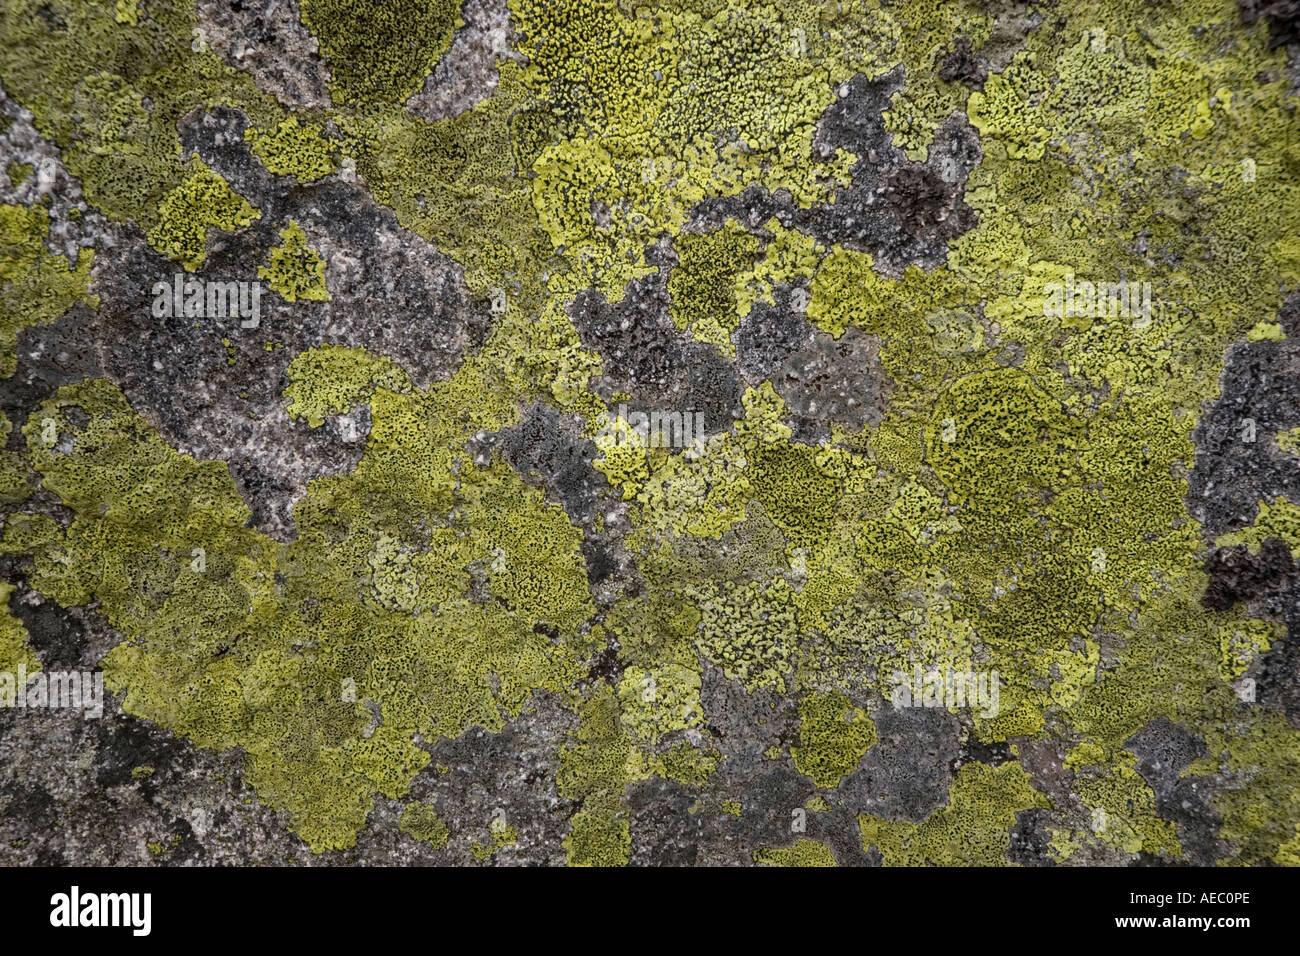 Mappa mondo lichen (Rhizocarpon geographicum) colonizzando una superficie di roccia. Il Lichen colonisant la superficie d'onu rocher. Foto Stock